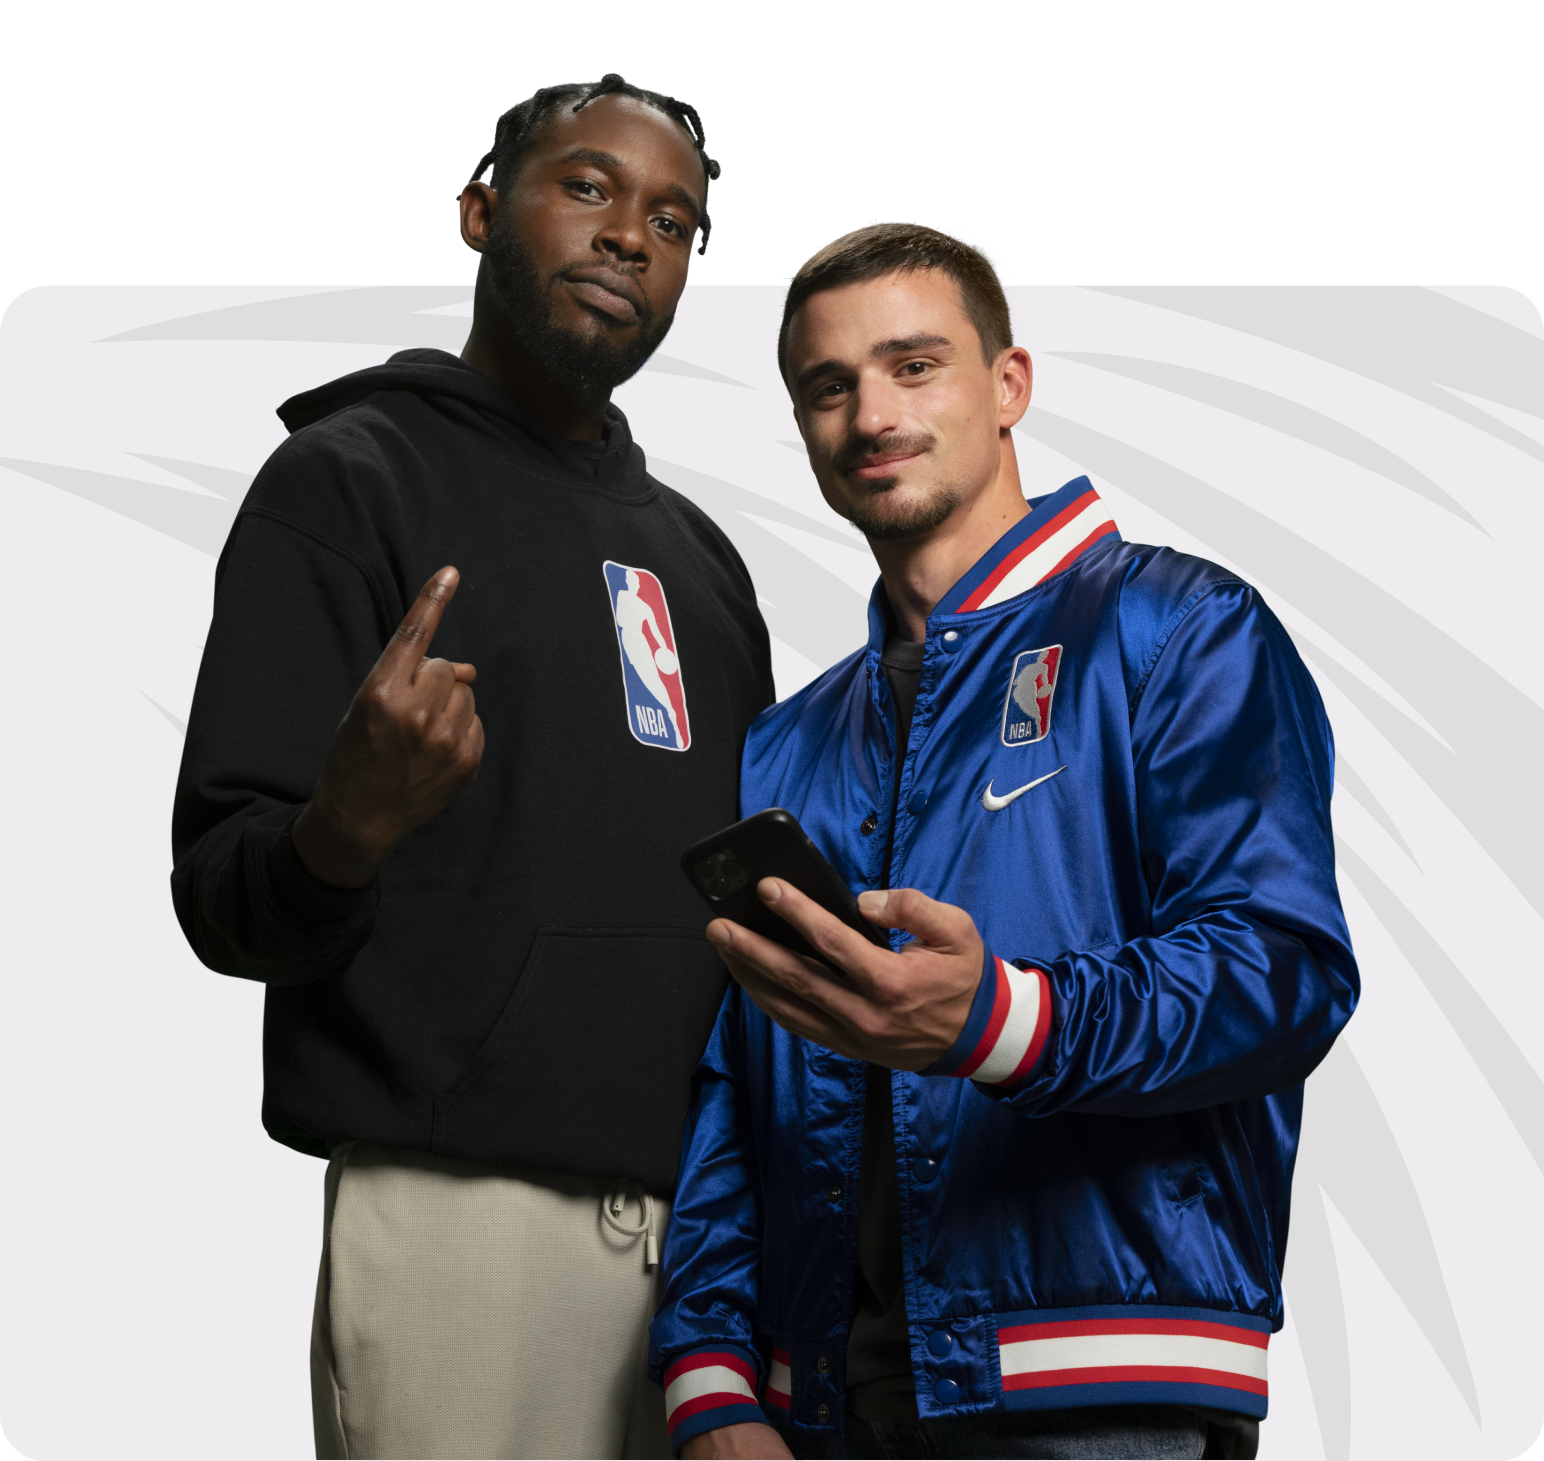 Deux hommes avec un téléphone portable et des vestes NBA.